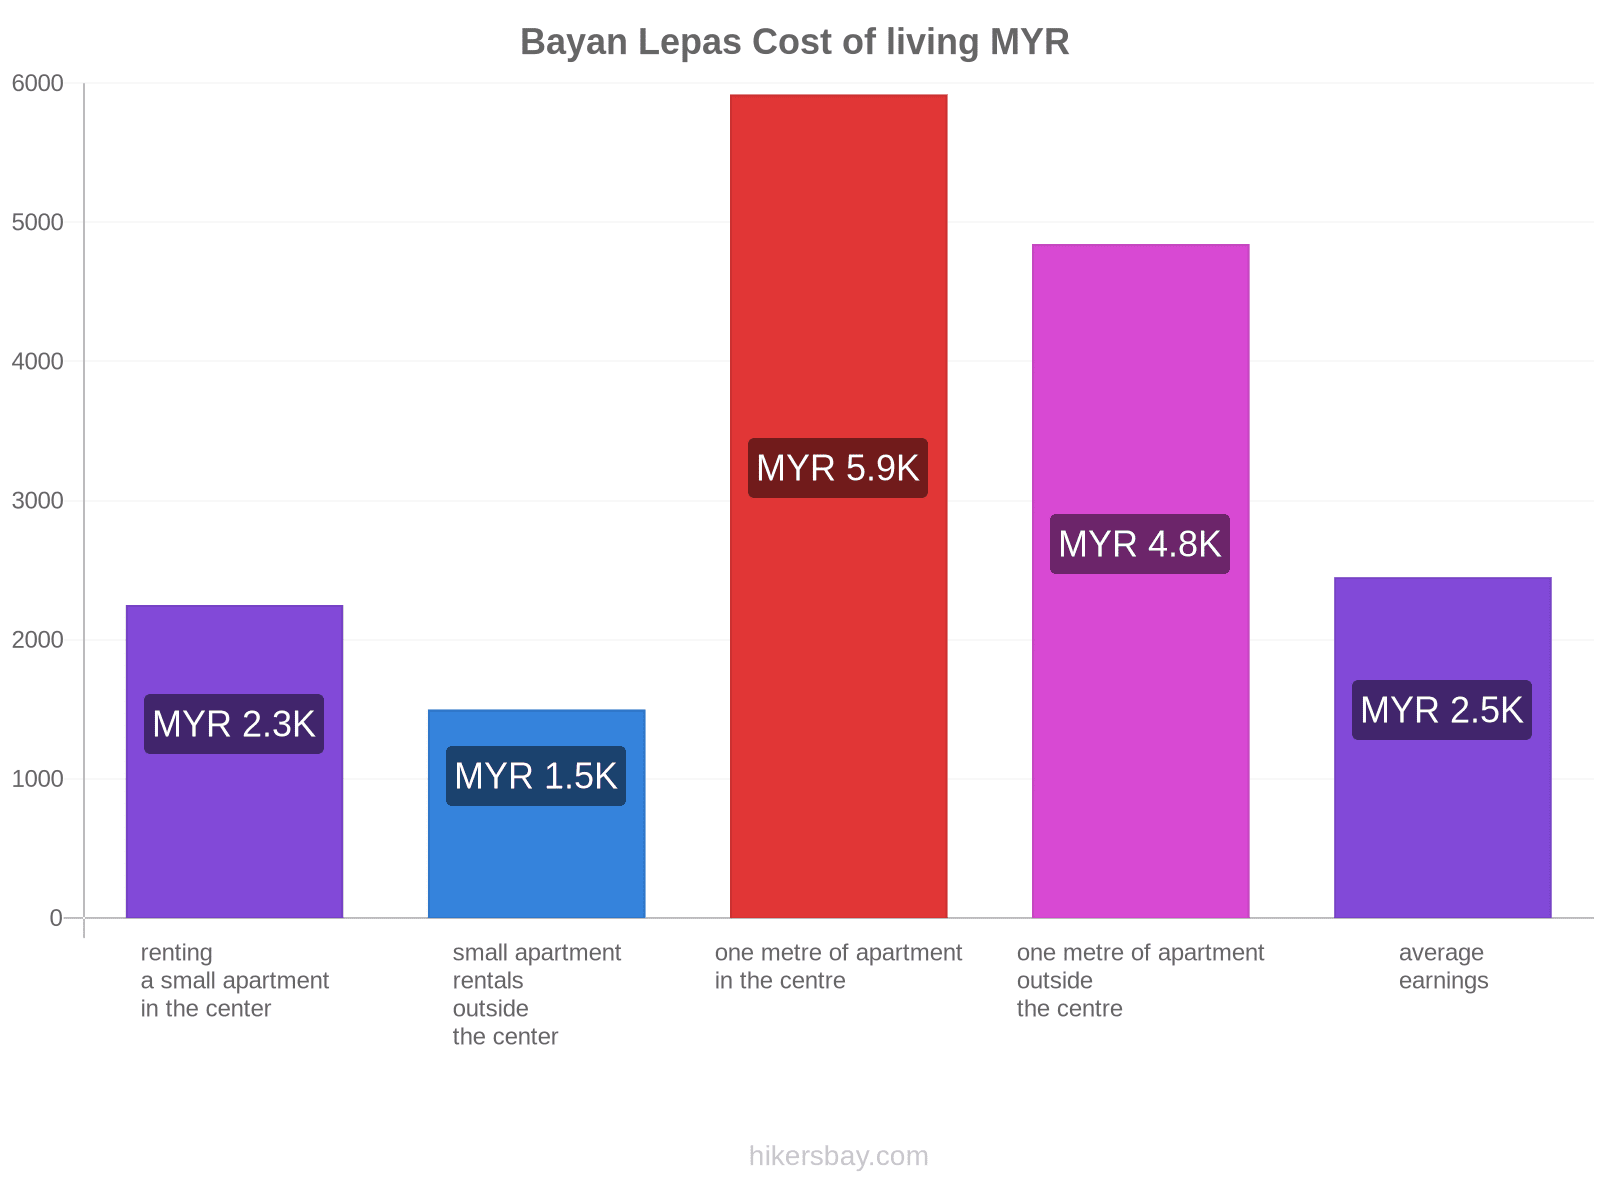 Bayan Lepas cost of living hikersbay.com